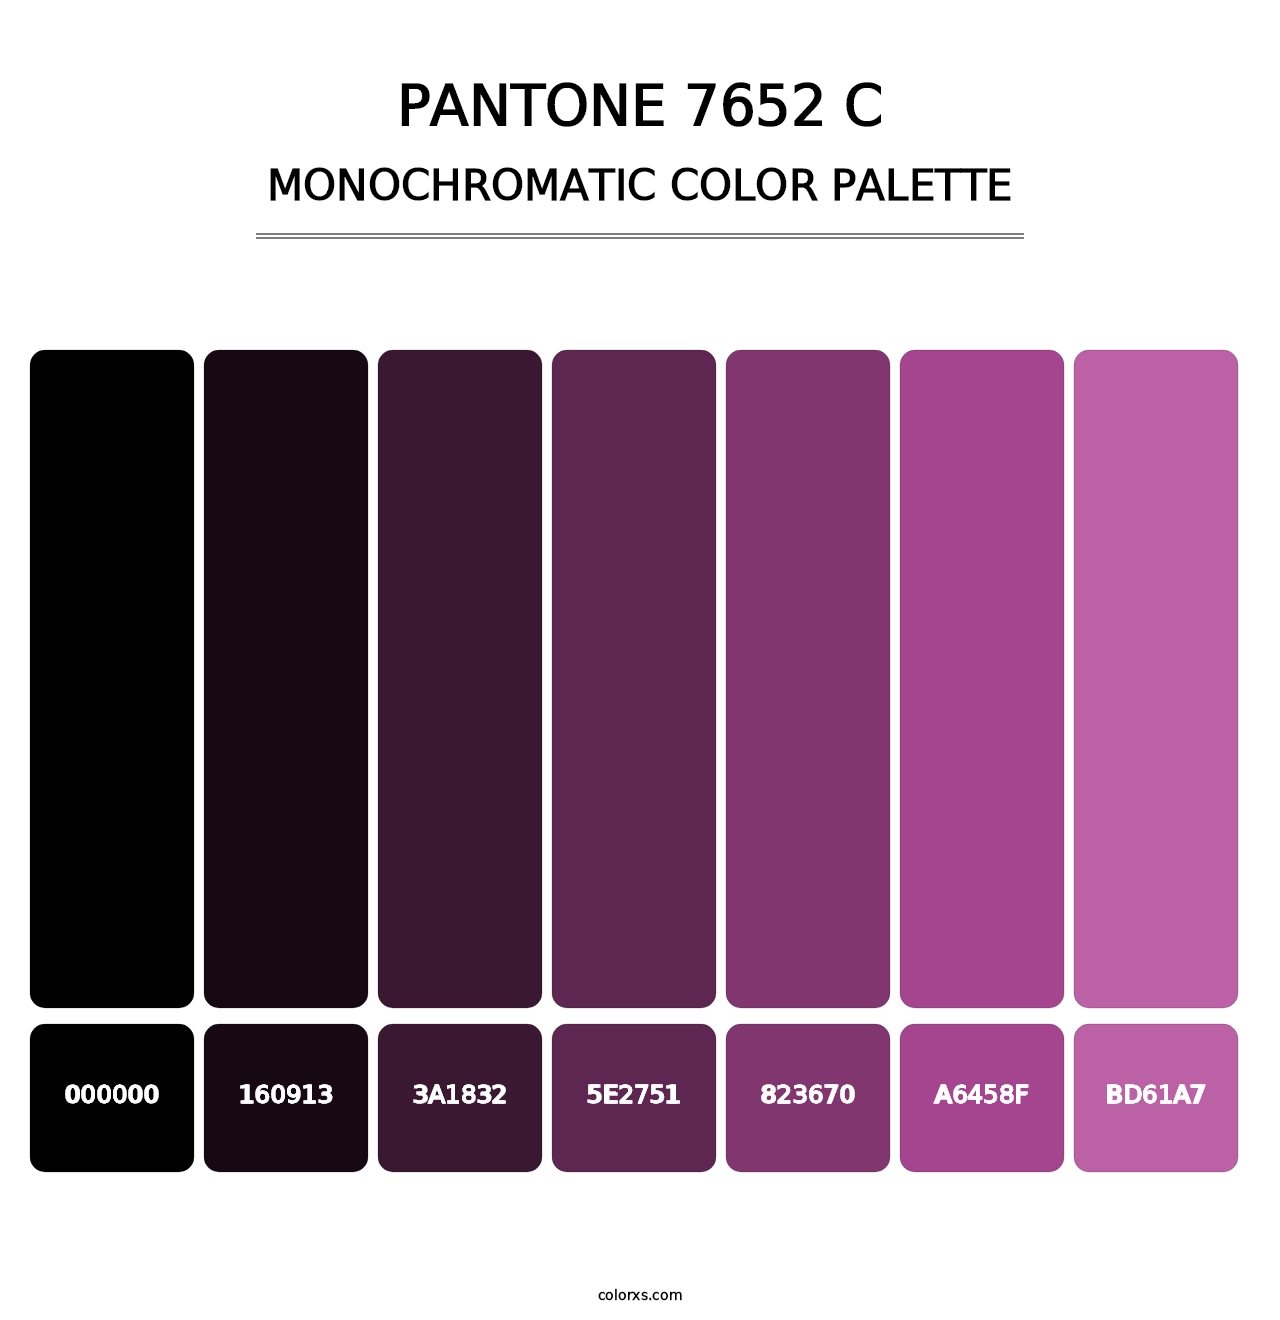 PANTONE 7652 C - Monochromatic Color Palette